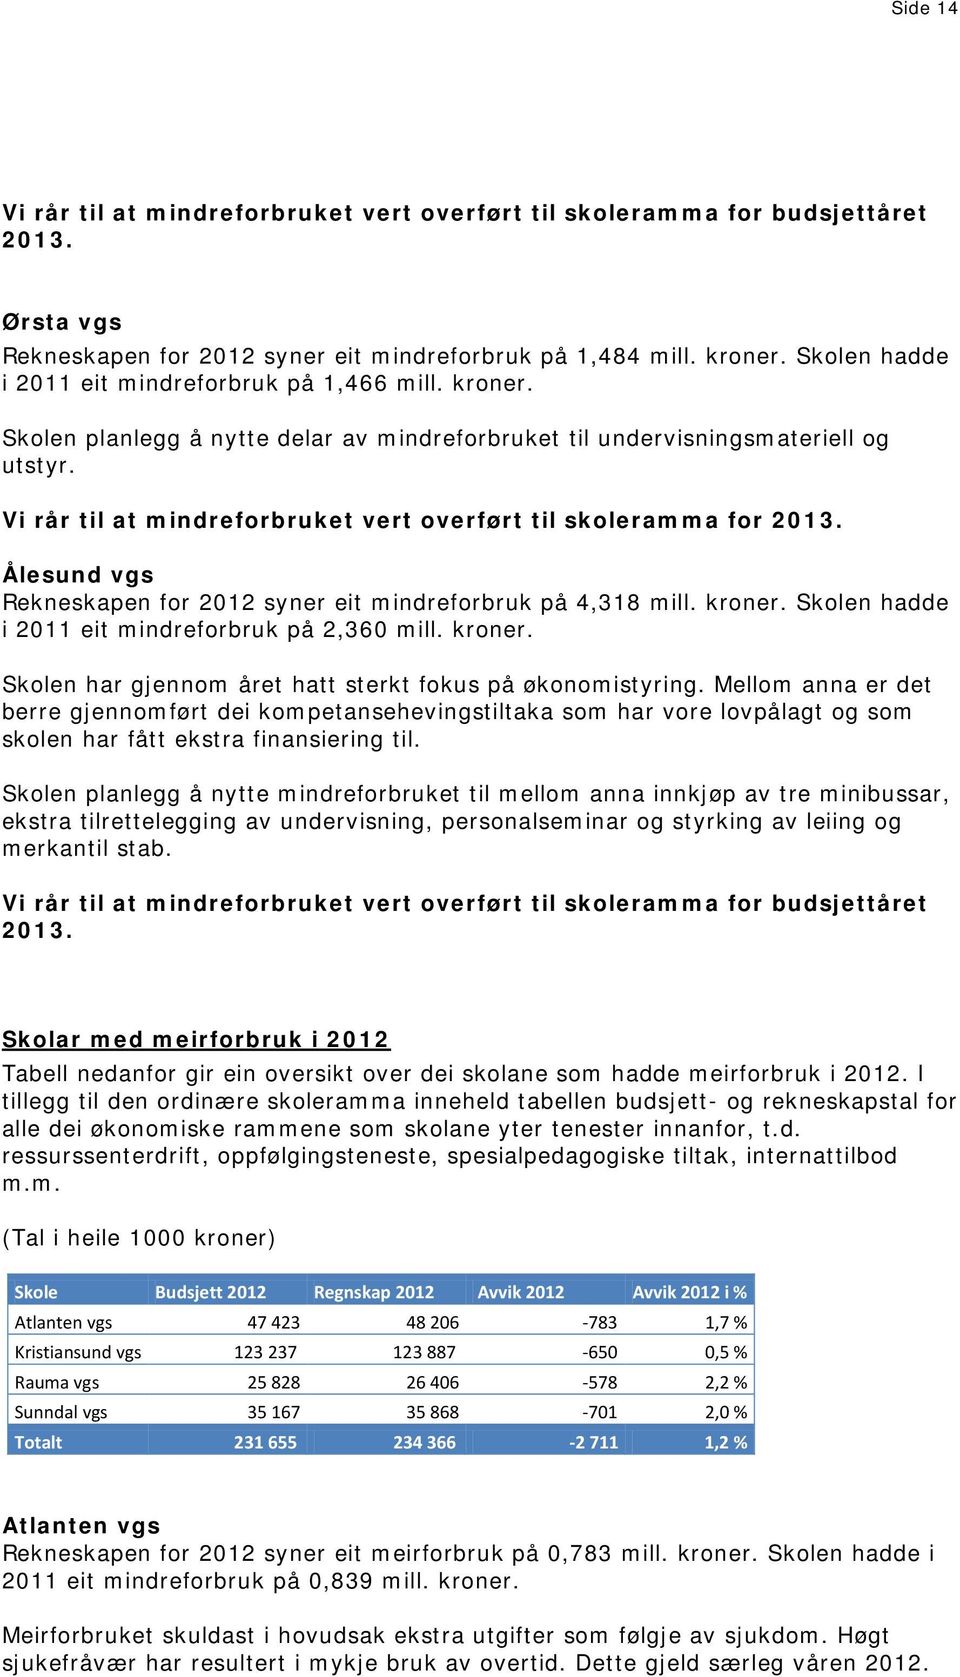 Vi rår til at mindreforbruket vert overført til skoleramma for Ålesund vgs Rekneskapen for 2012 syner eit mindreforbruk på 4,318 mill. kroner. Skolen hadde i 2011 eit mindreforbruk på 2,360 mill.